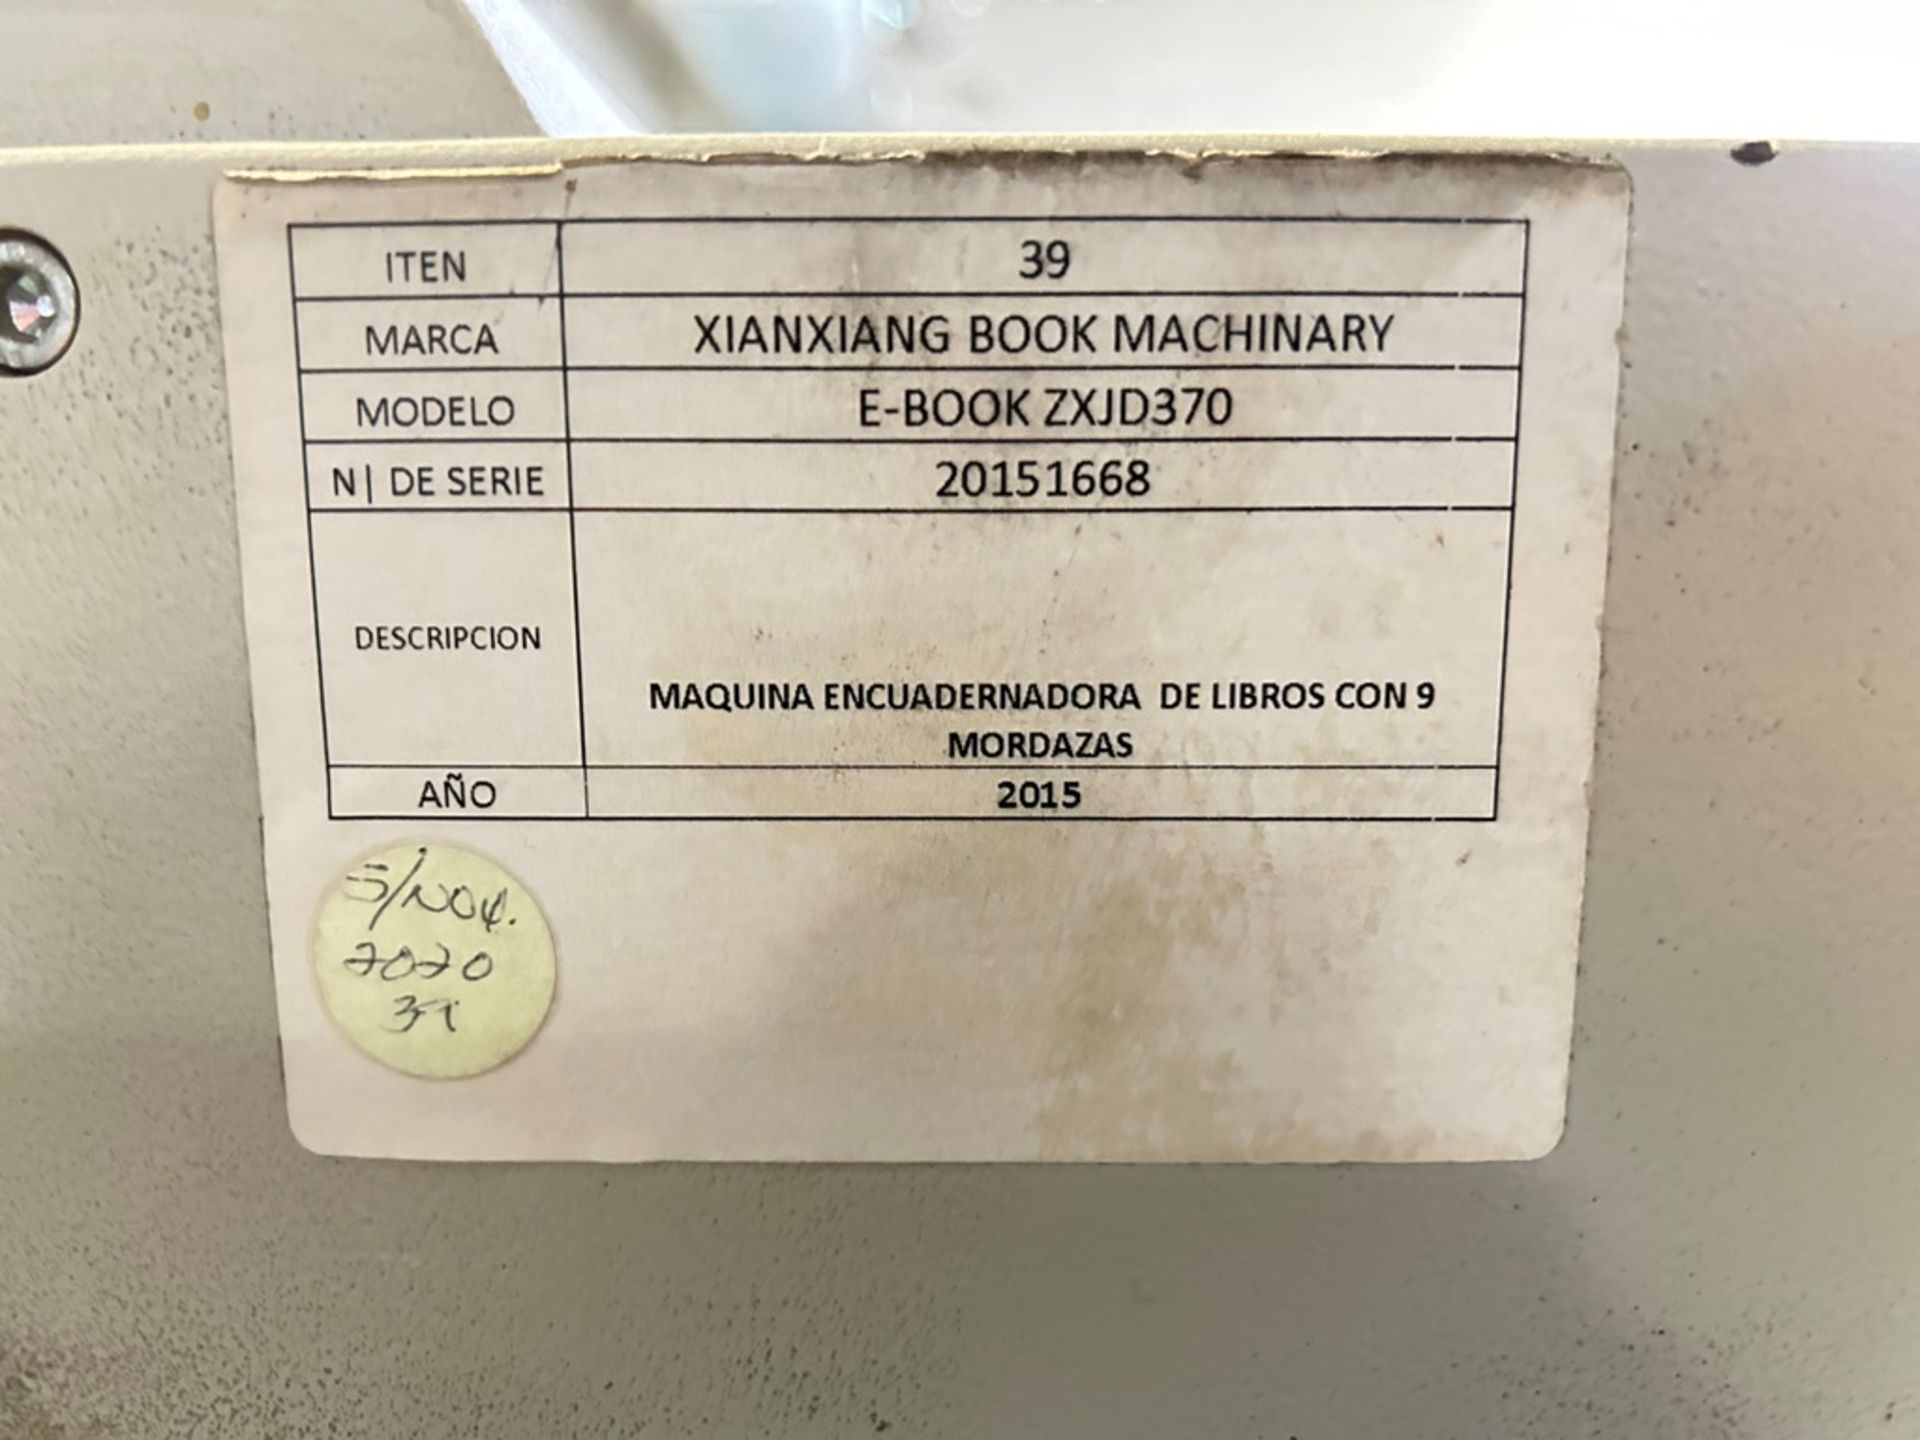 XINXIANG BOX MACHINARY 9 jaw book binding machine, Model E-BOOK ZXJD370, Serial No. 20151668, Year - Image 12 of 13